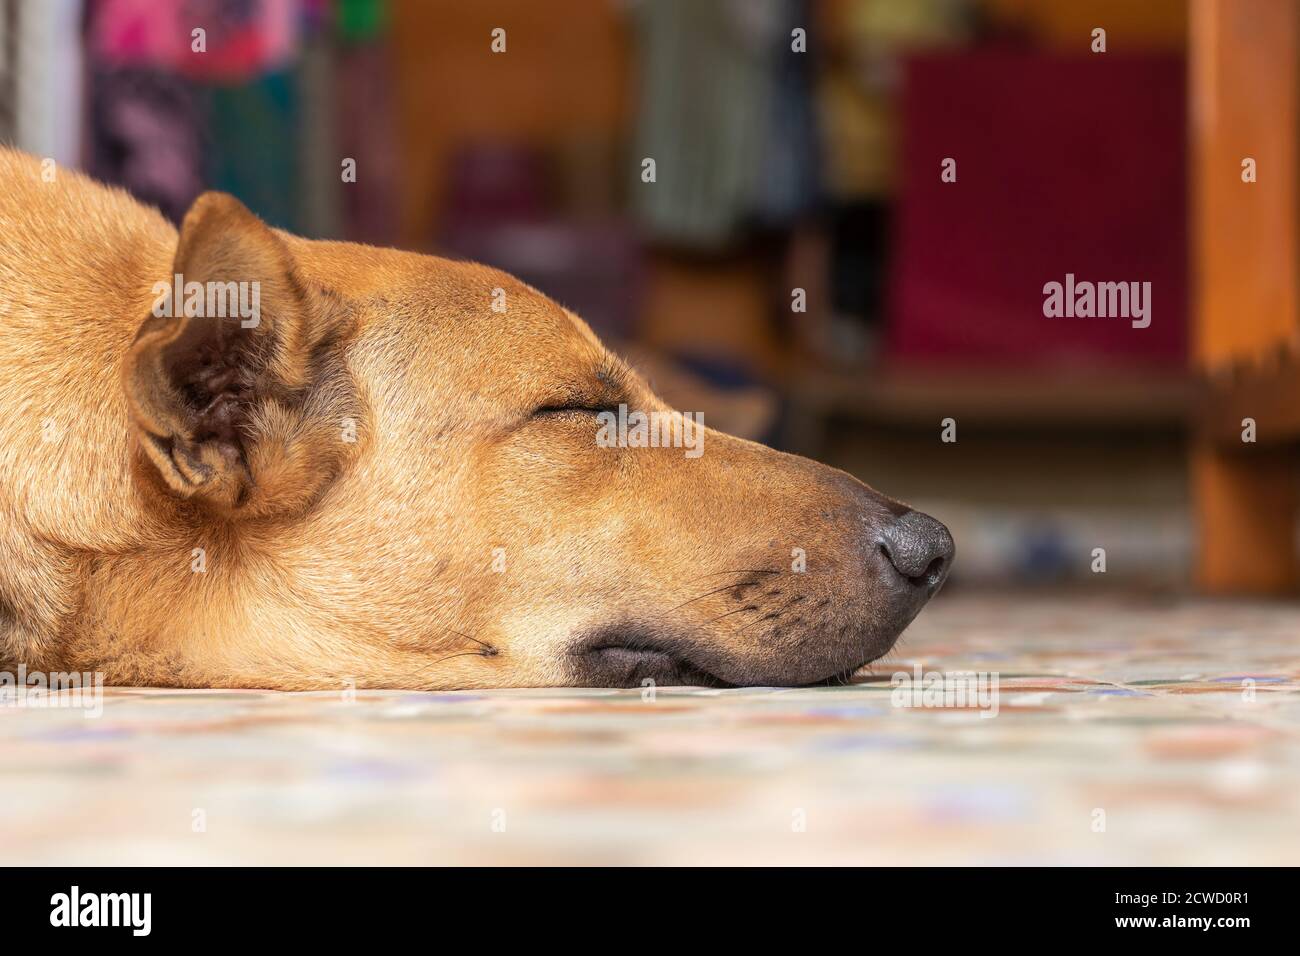 Brown big dog sleeping on floor. Focus on dog head. Stock Photo